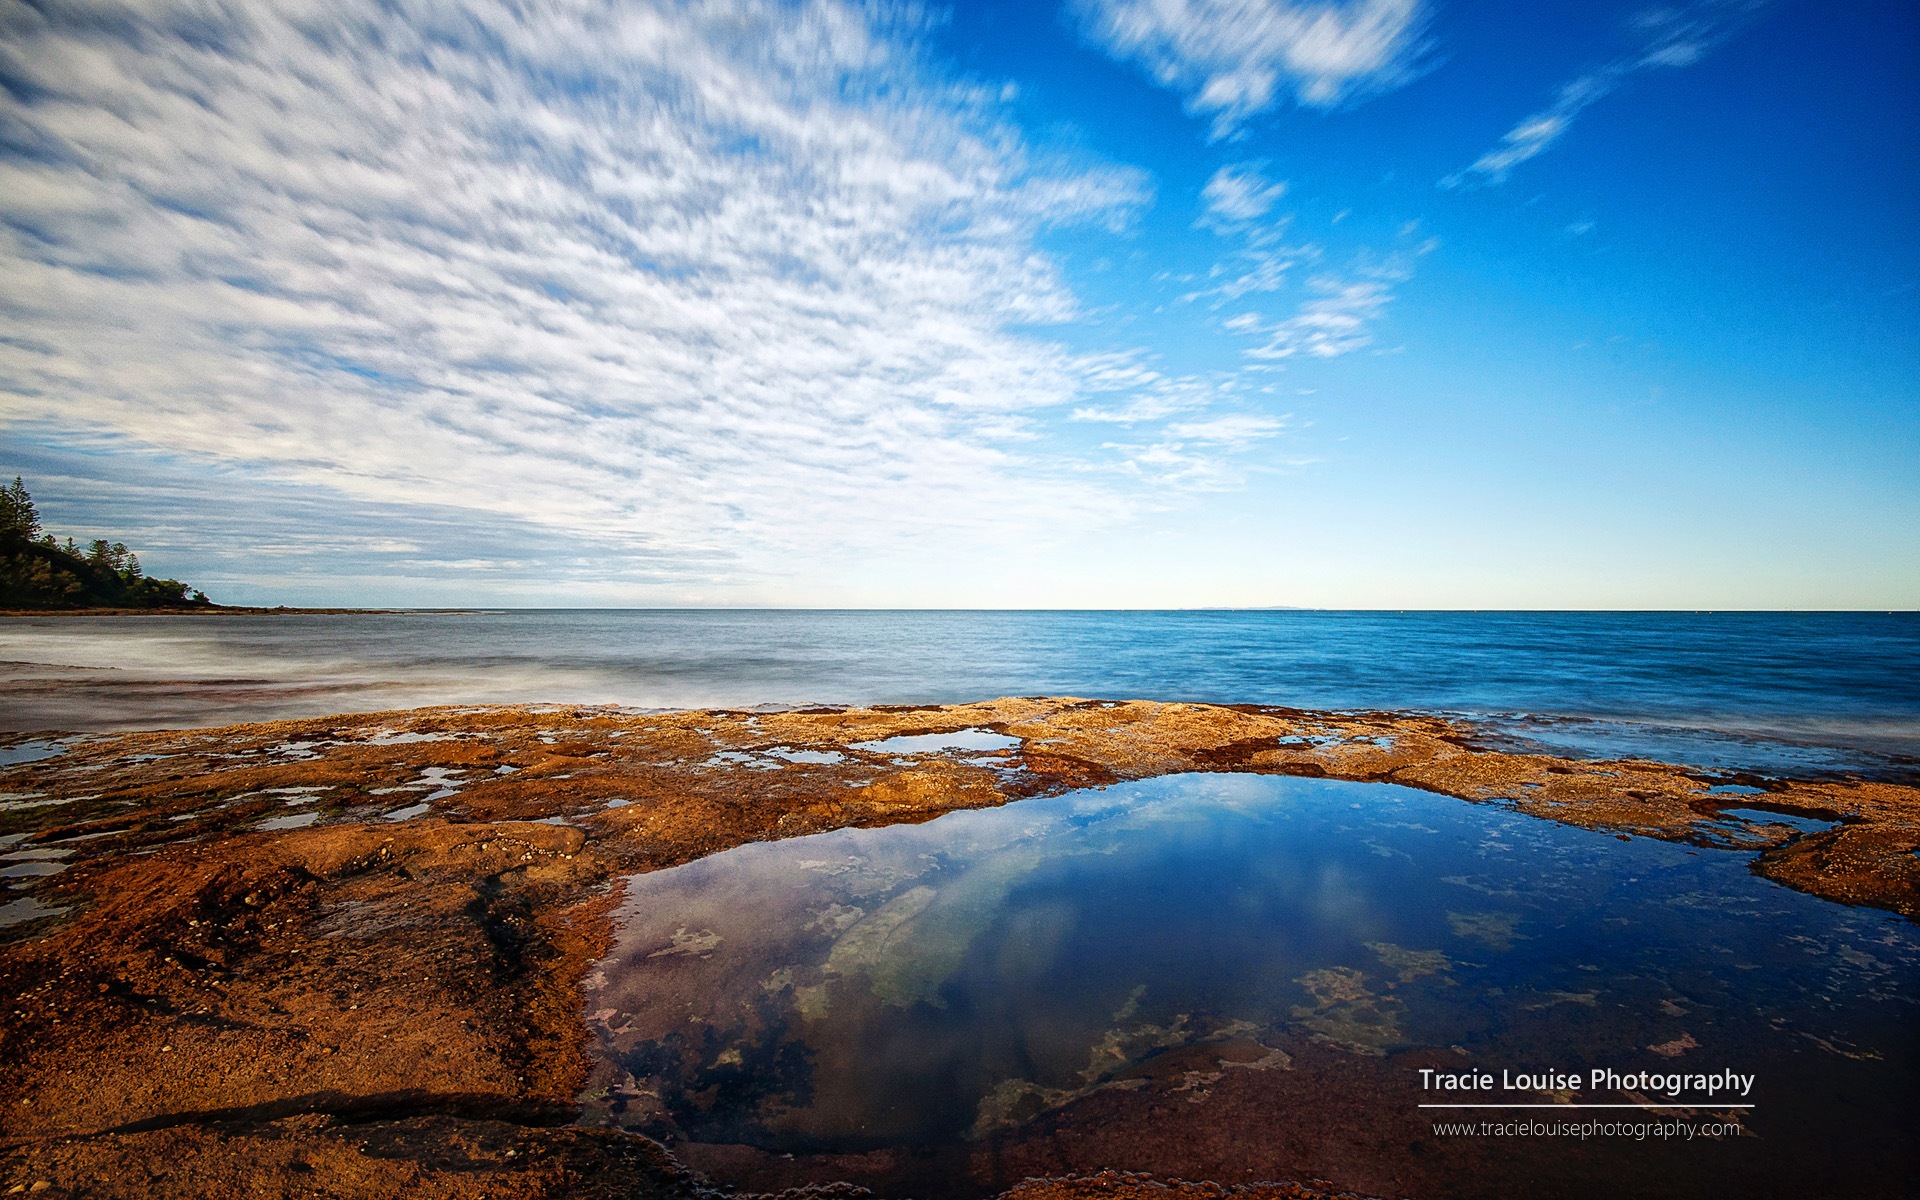 澳大利亚昆士兰州，风景秀丽，Windows 8 主题高清壁纸18 - 1920x1200